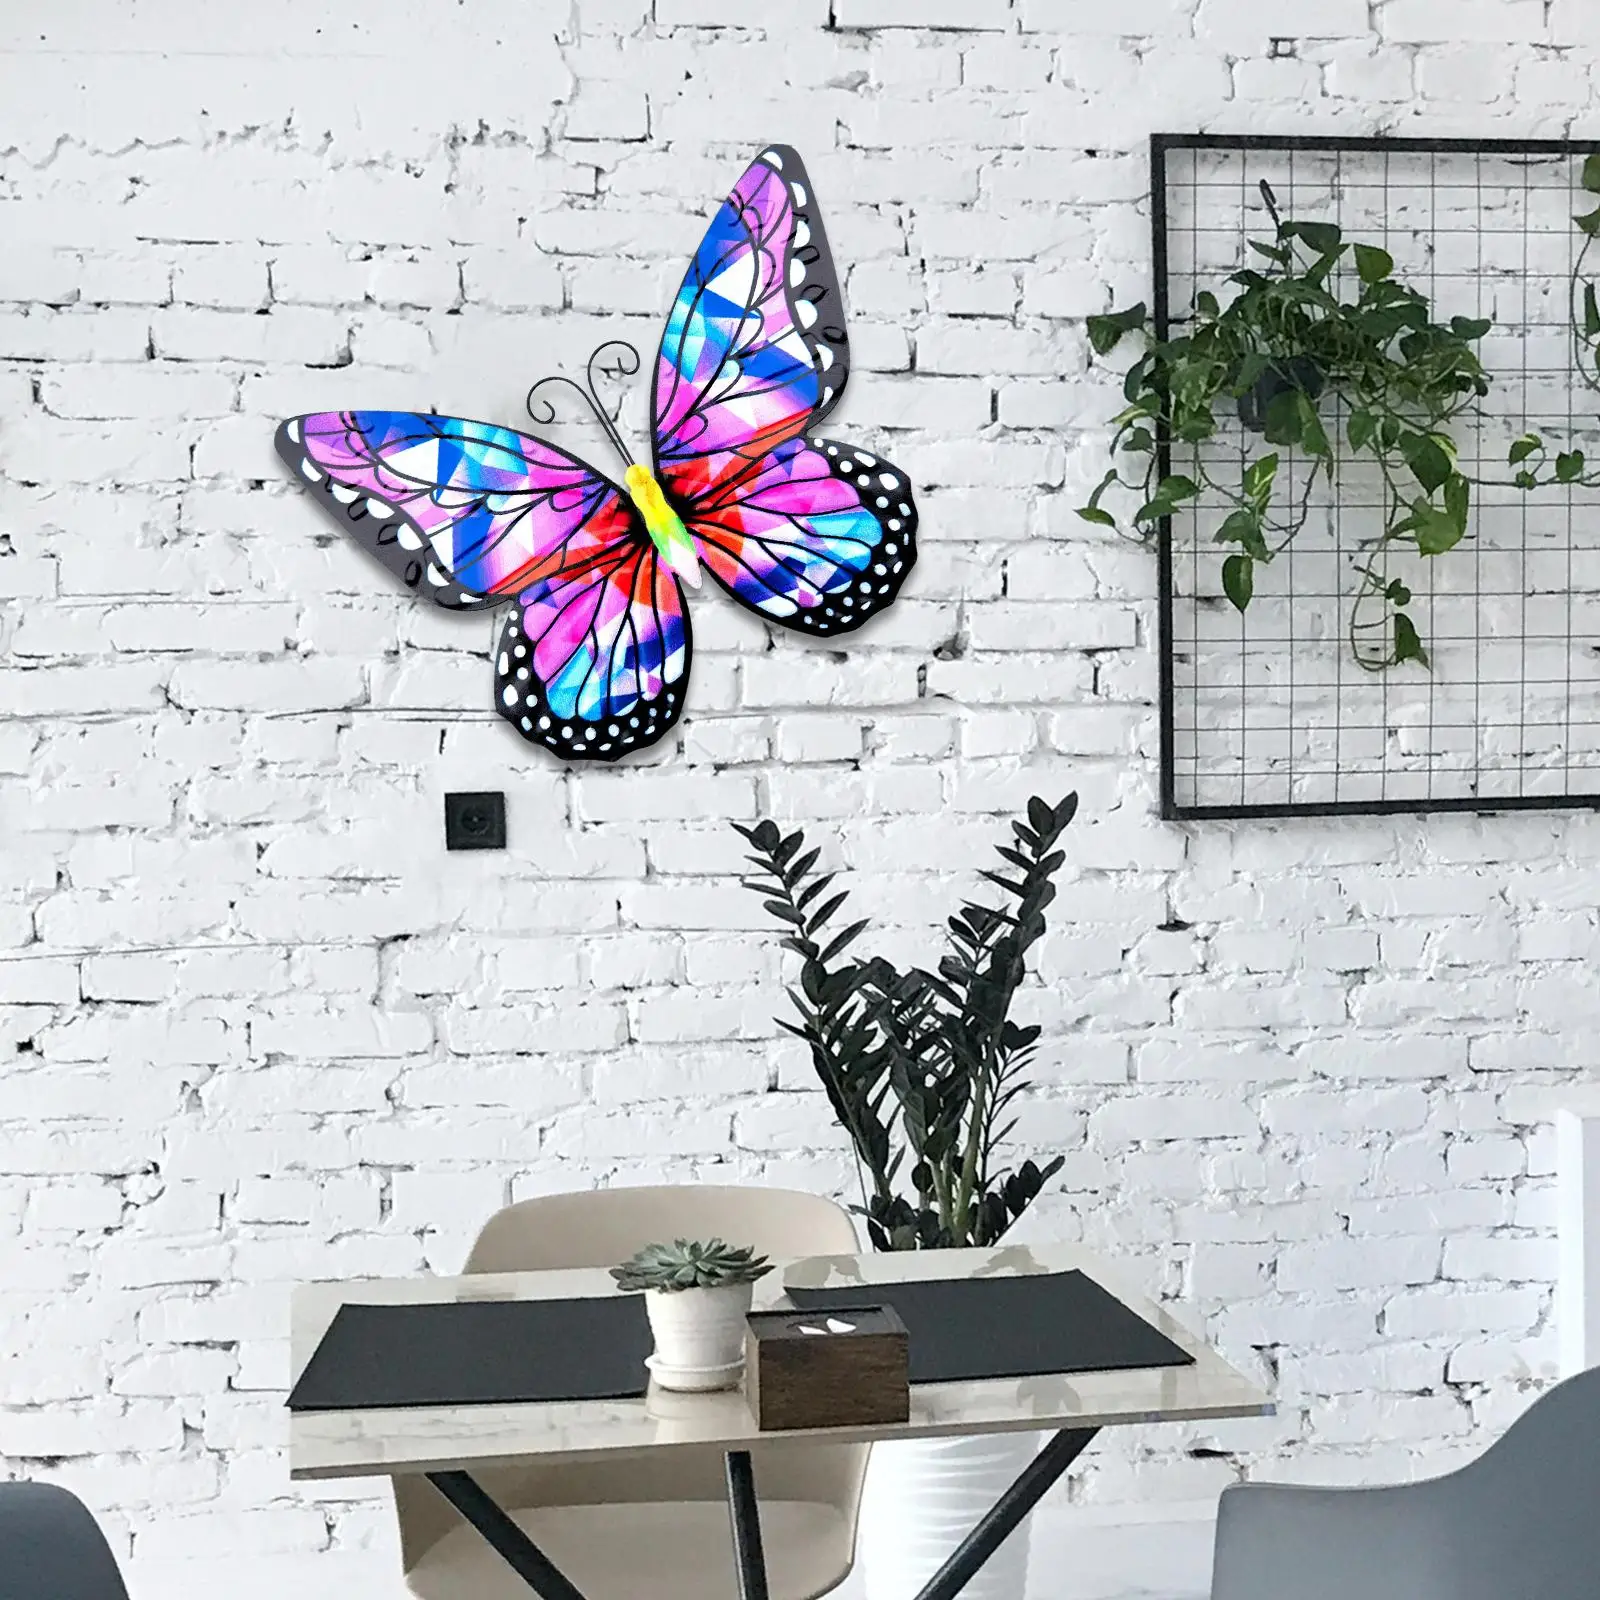 metal butterflies Artistic Butterflies Hanging Decorations Indoor Outdoor Wall